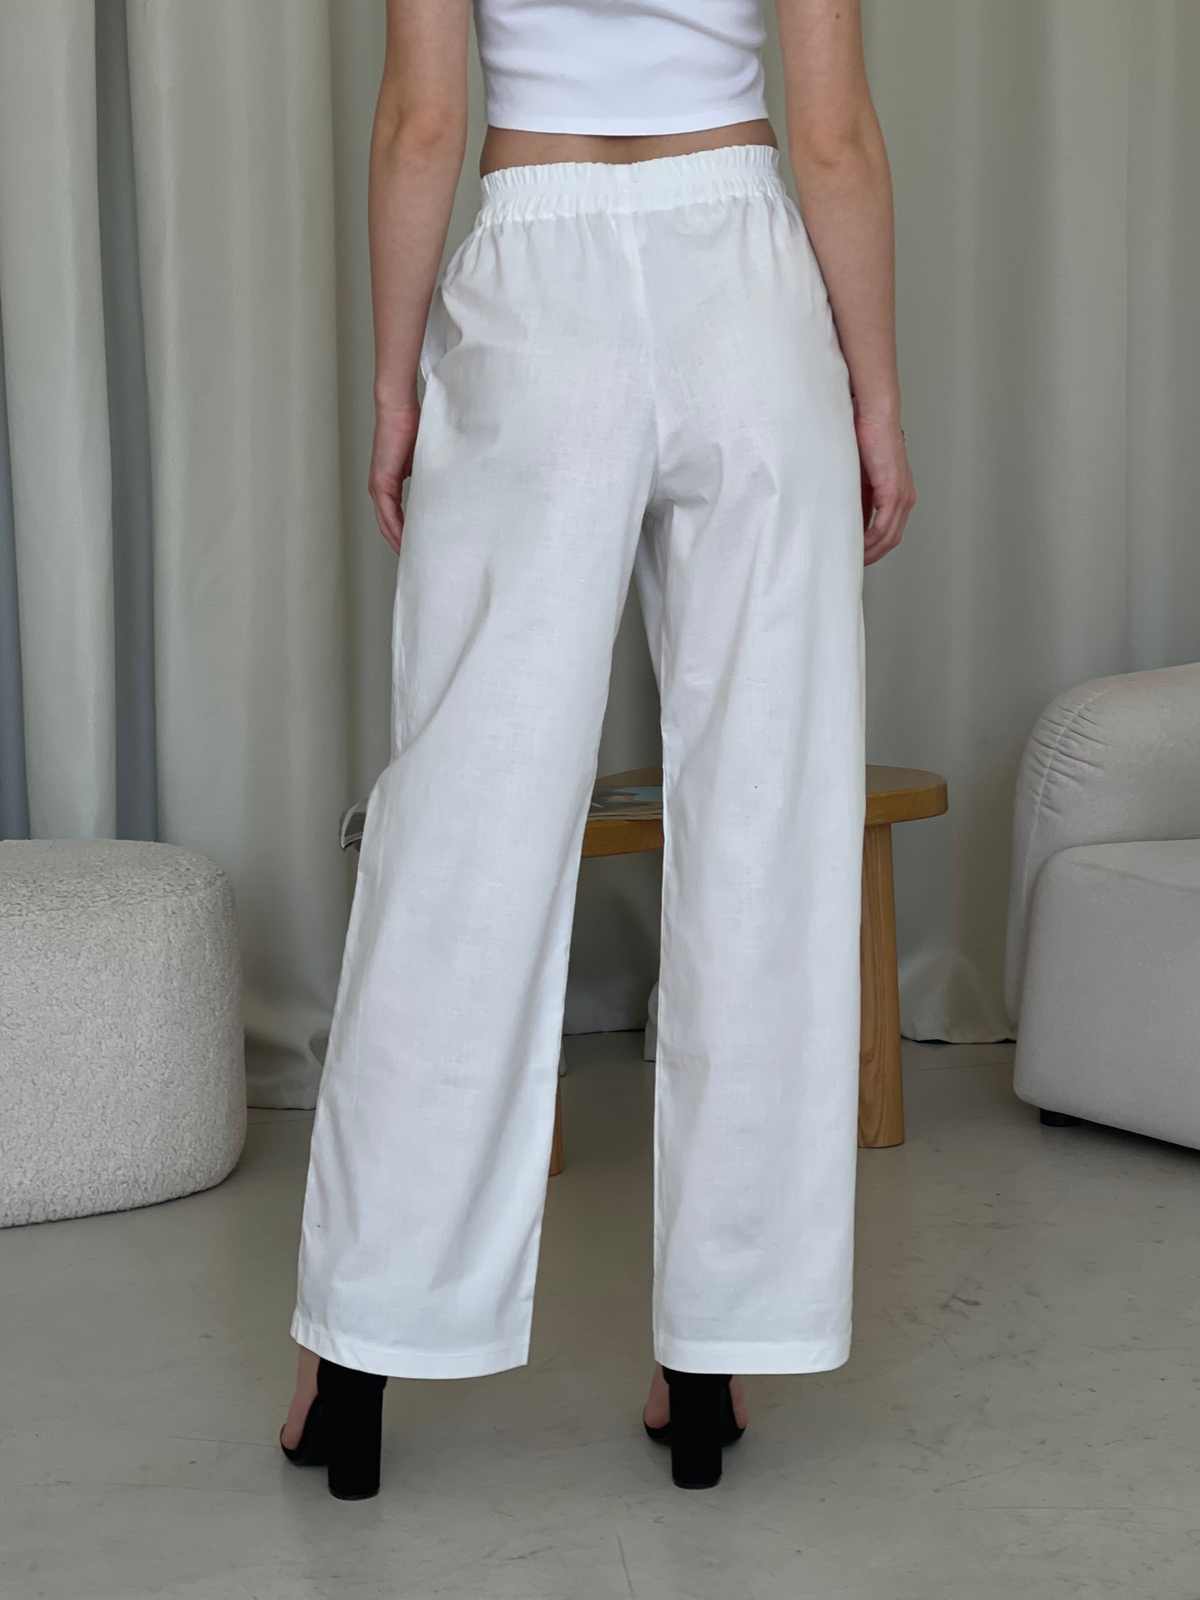 Купить Льняной костюм с штанами палаццо и рубашкой белый Лорен 100001202 размер 42-44 (S-M) в интернет-магазине